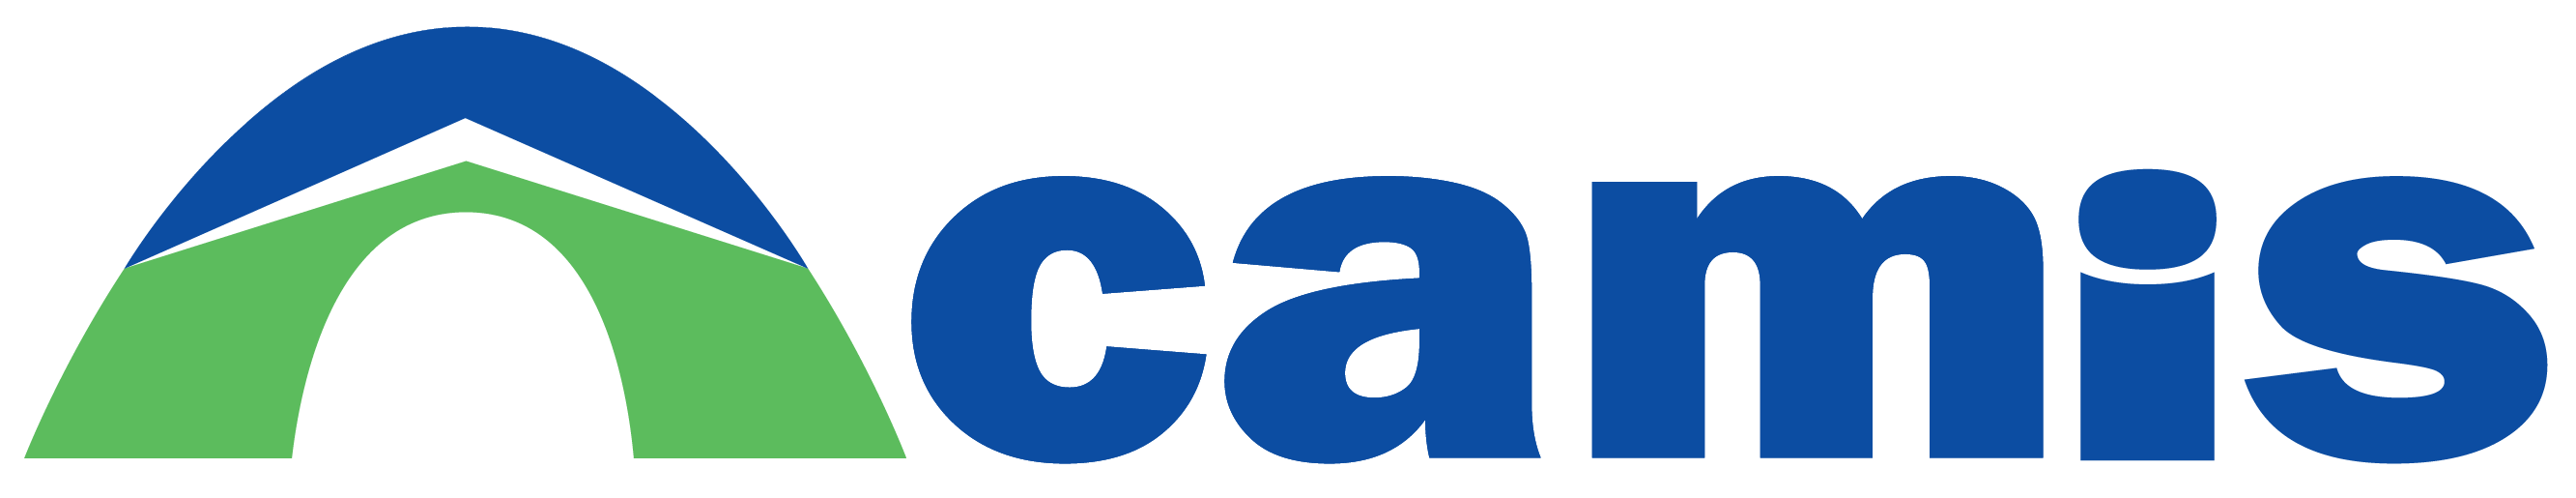 Camis Logo